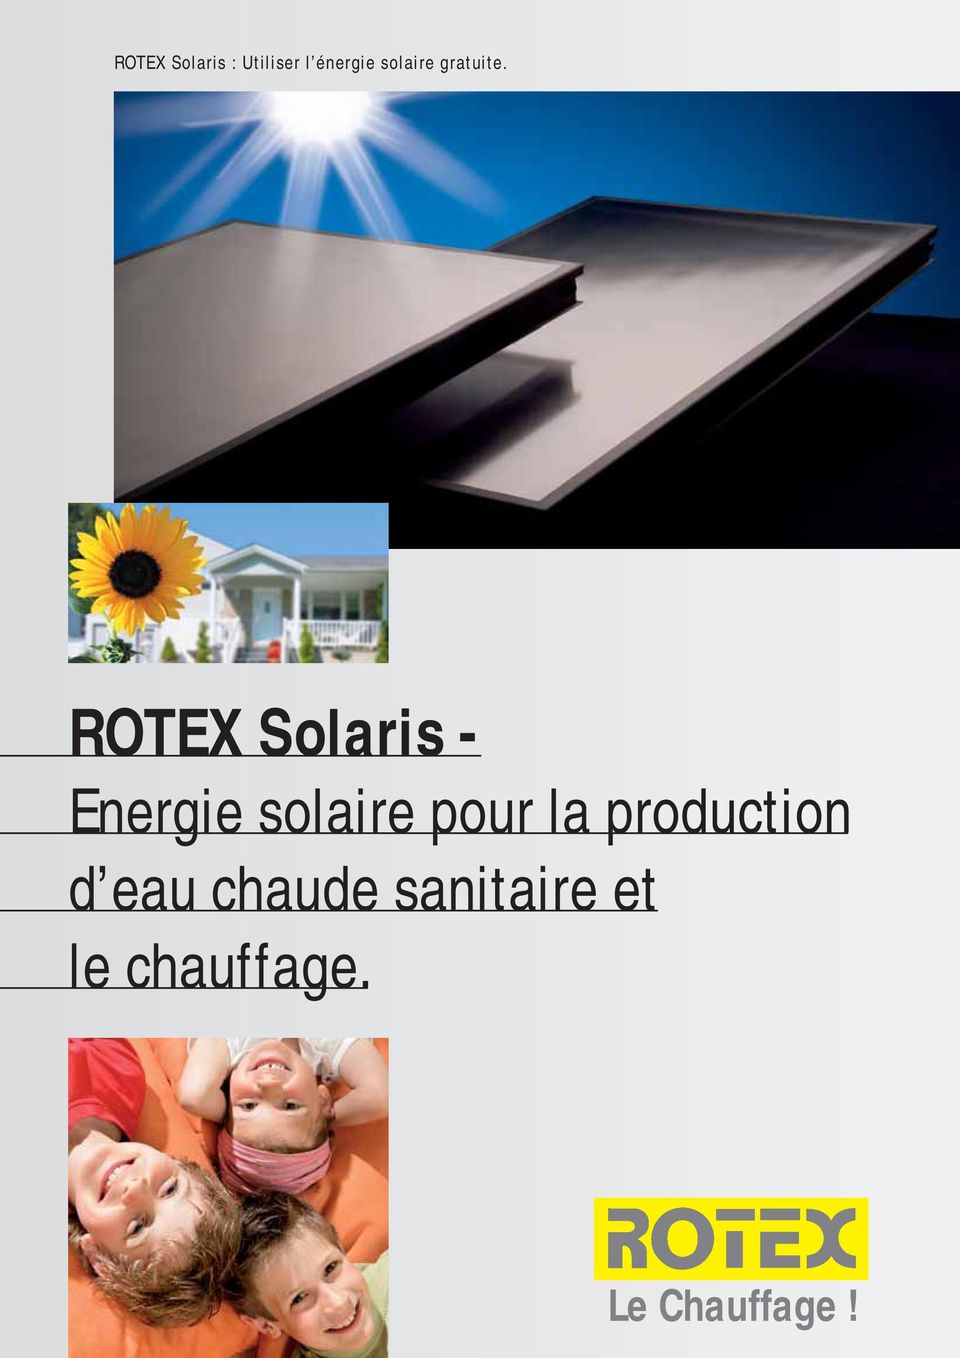 ROTEX Solaris - Energie solaire pour la